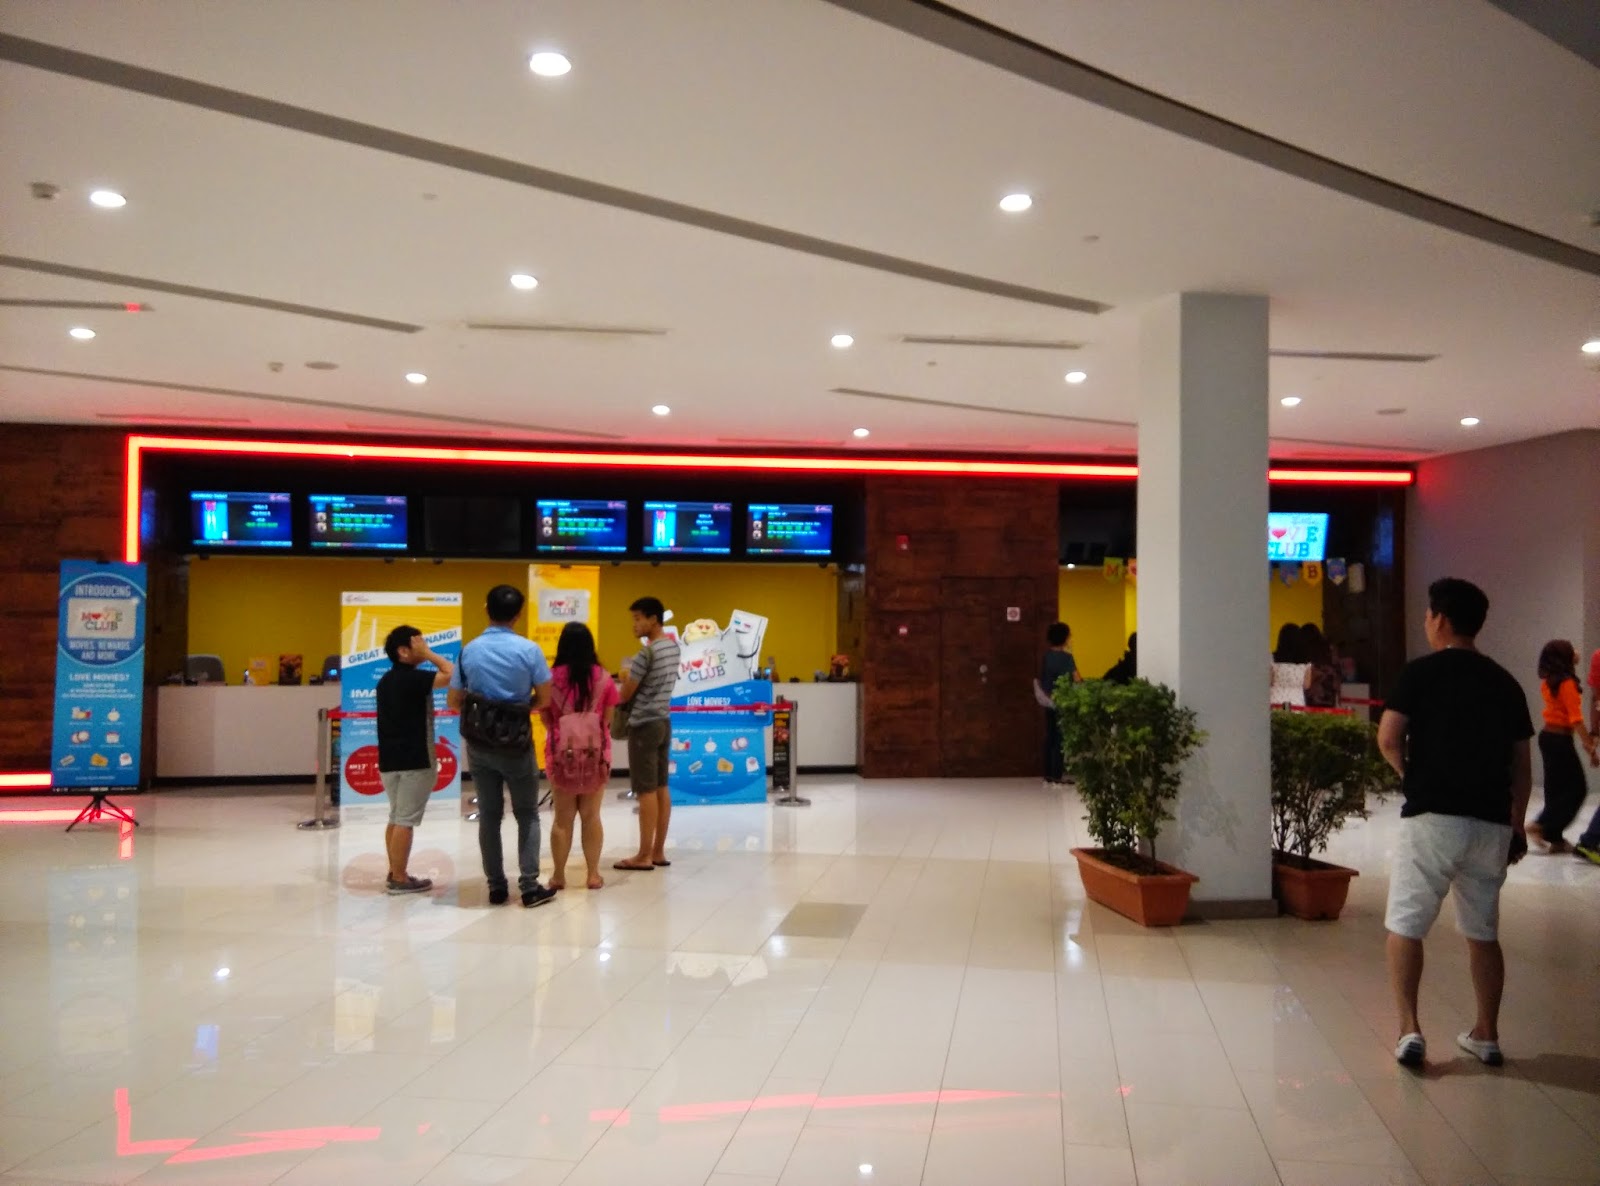 Our Journey Penang Gurney Paragon Mall Tgv Imax Cinema